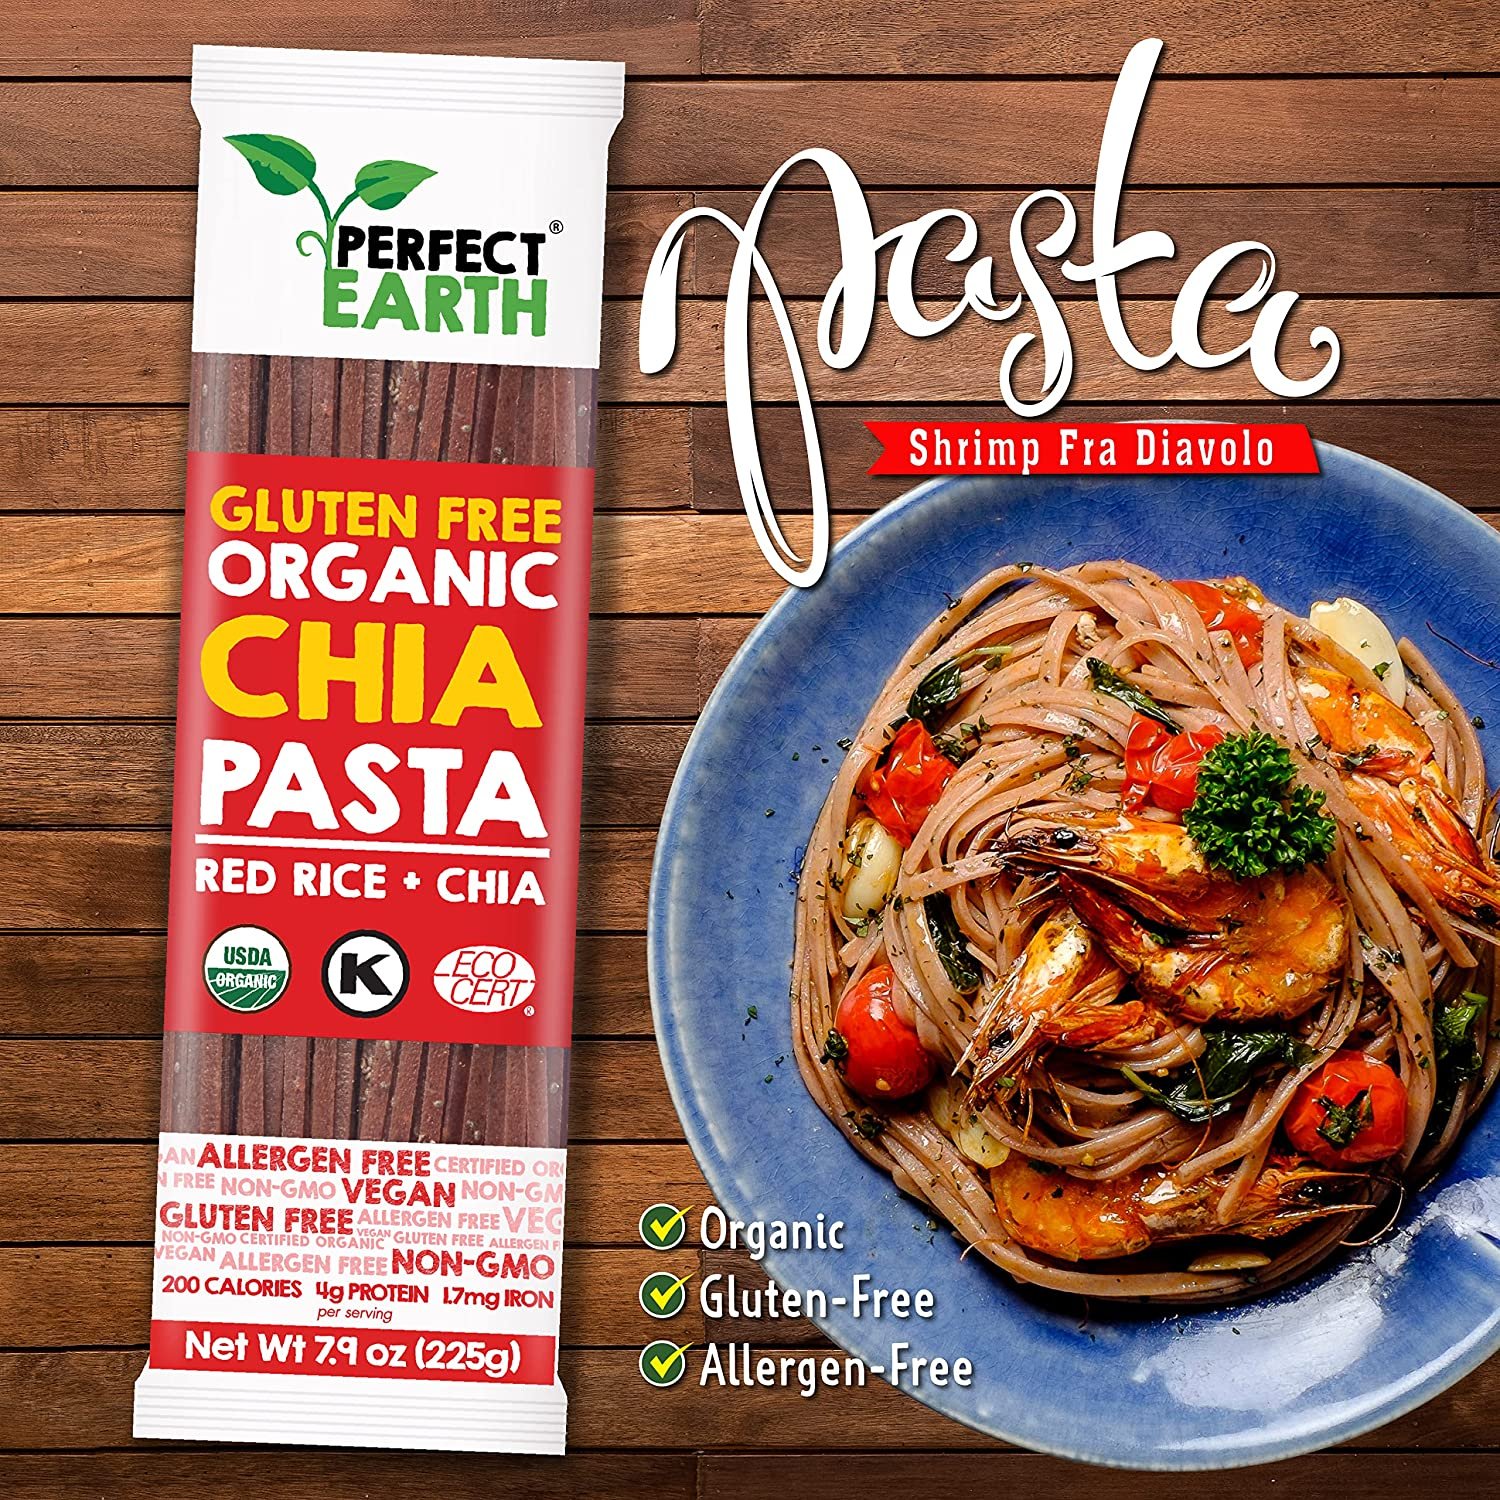 Bún Gạo Lứt Đỏ Và Hạt Chia Hữu Cơ (225g) - Perfect Earth Organic Chia Pasta - Red Rice + Chia (225g)